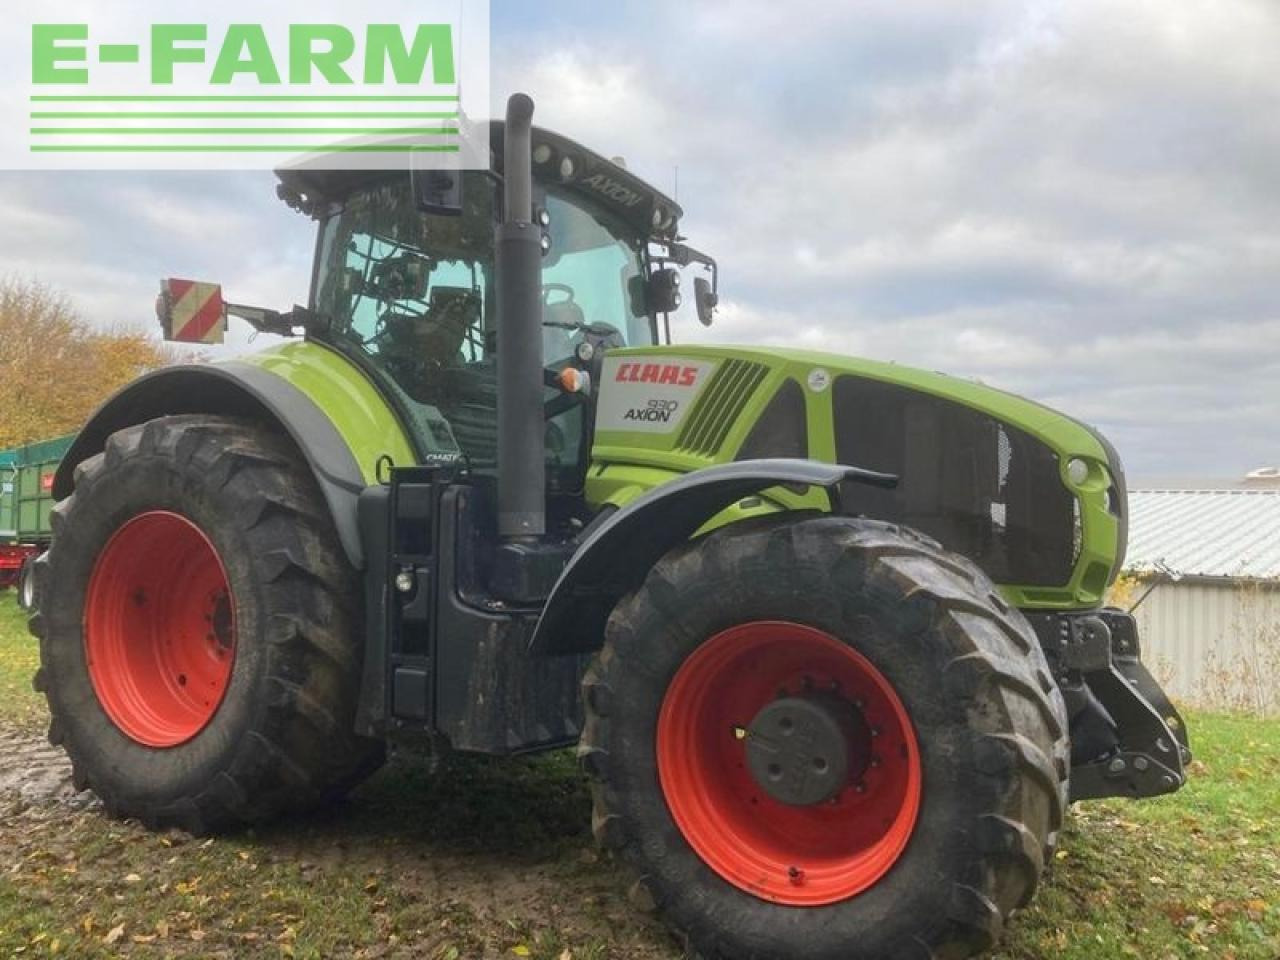 Farm tractor CLAAS axion 930